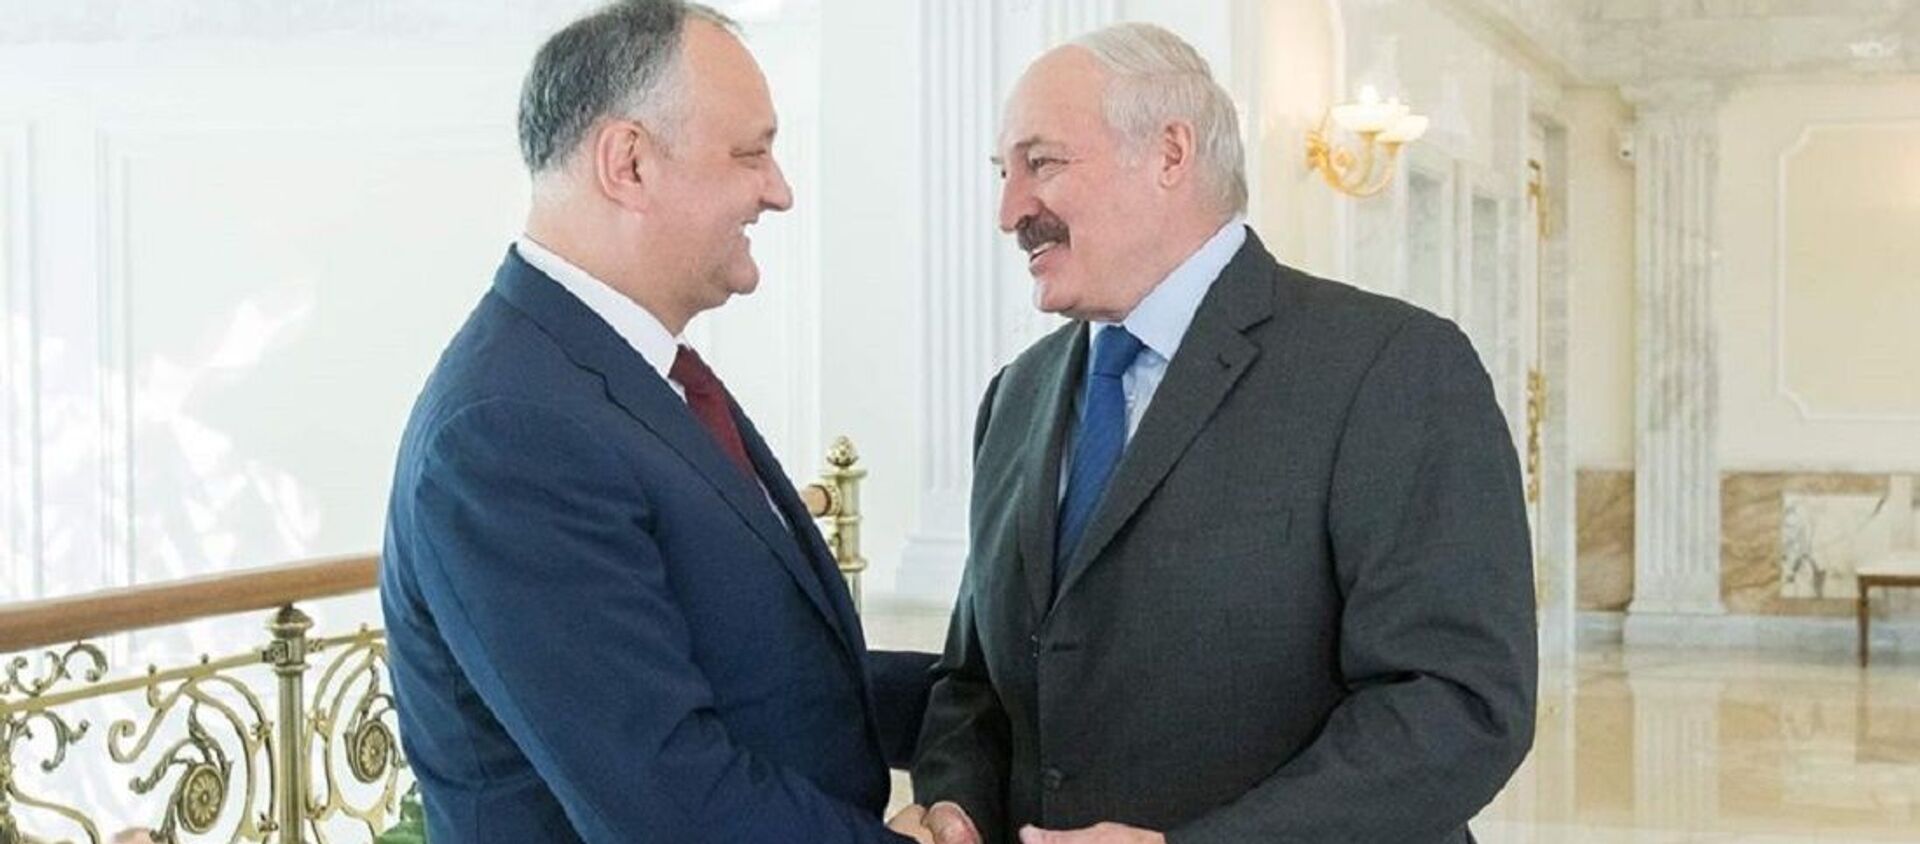 Президент Молдовы Игорь Додон и лидер Республики Беларусь Александр Лукашенко - Sputnik Молдова, 1920, 07.05.2021